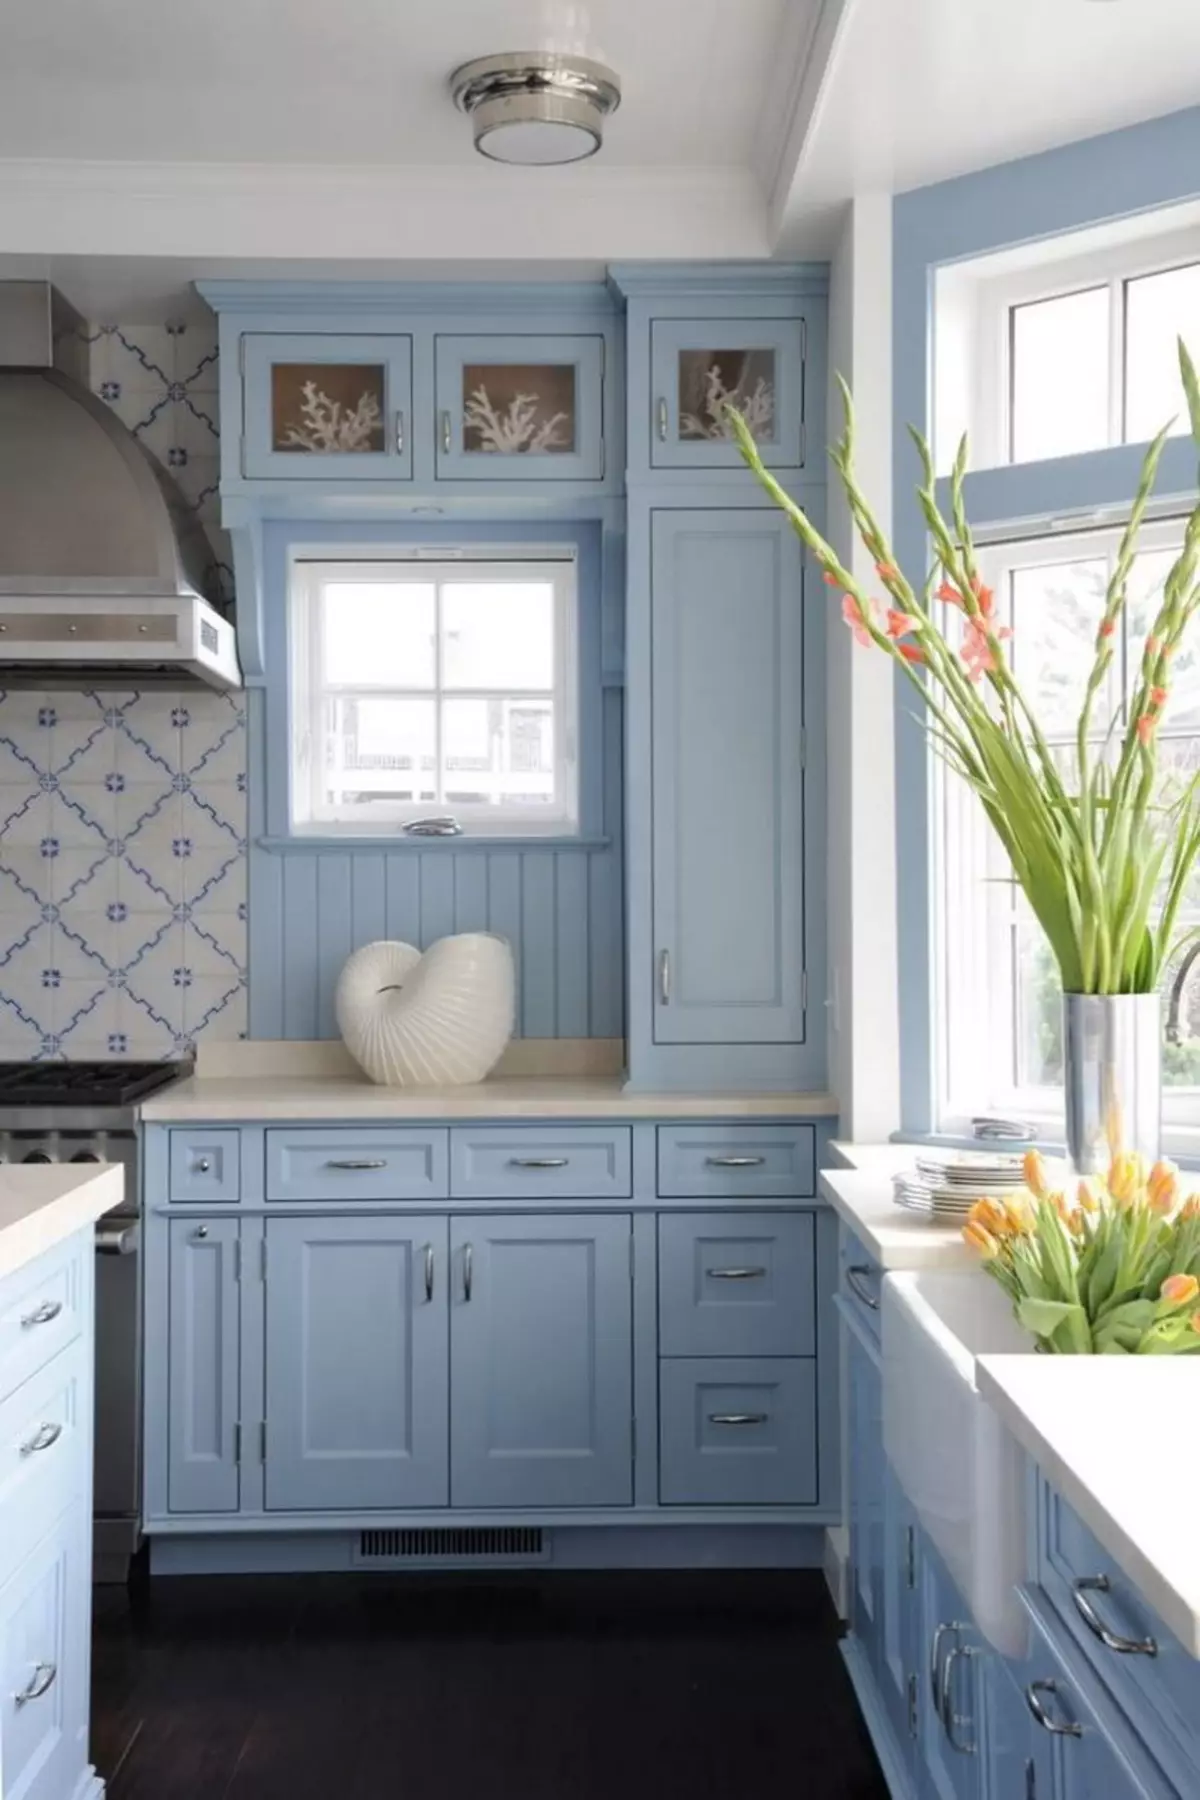 藍廚房（82張照片）：在藍色廚房套裝內部合併哪種顏色？淺藍色和深藍色色調的廚房設計 9555_6